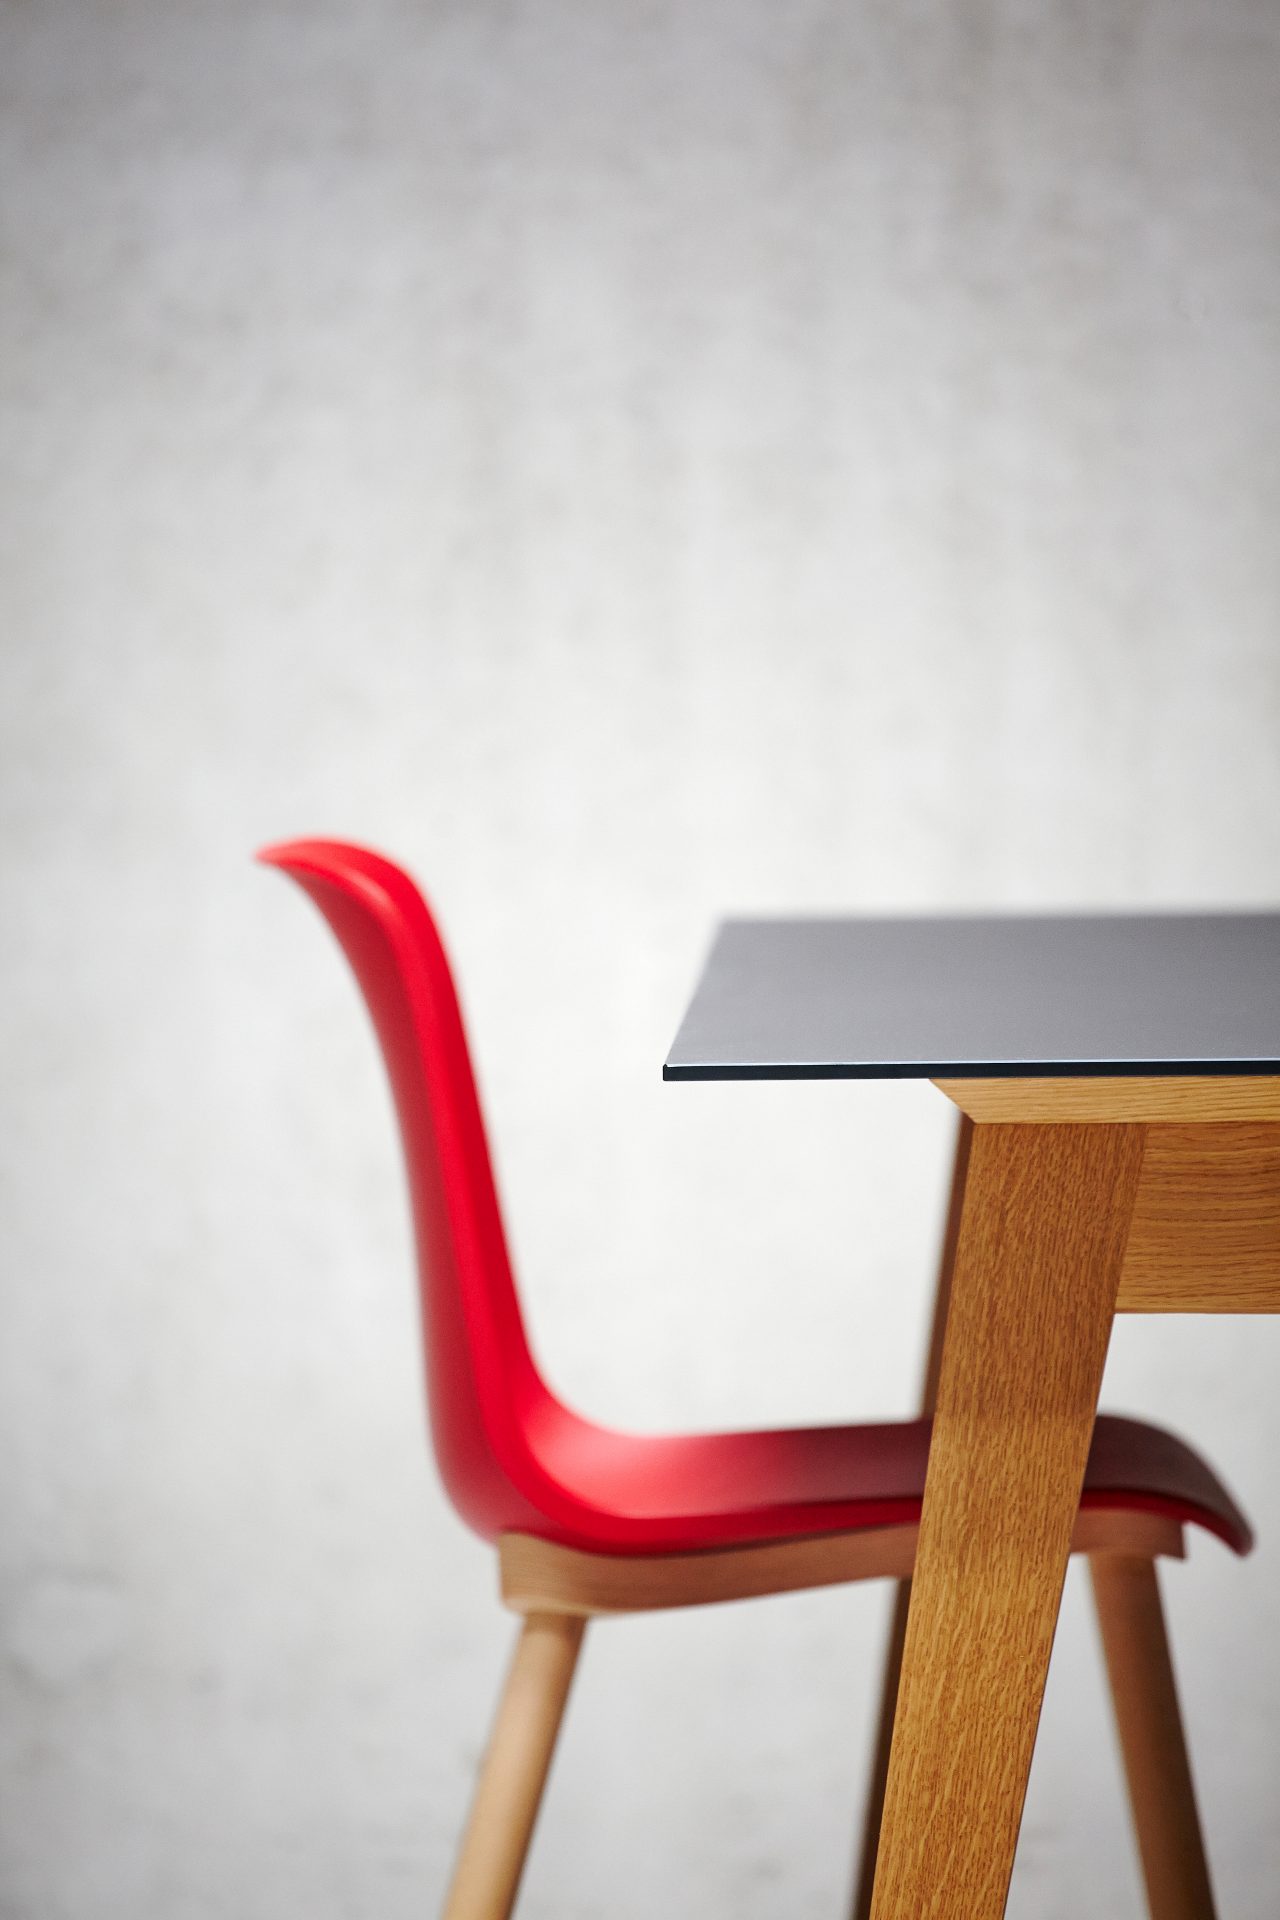 Der Esstisch Neo überzeugt mit seinem einzigartigen Design. Gefertigt wurde der Tisch aus massiver Eiche die geölt wurde, dies verleiht dem Tisch seine Farbe. Designet wurde er von der Marke Jan Kurtz.